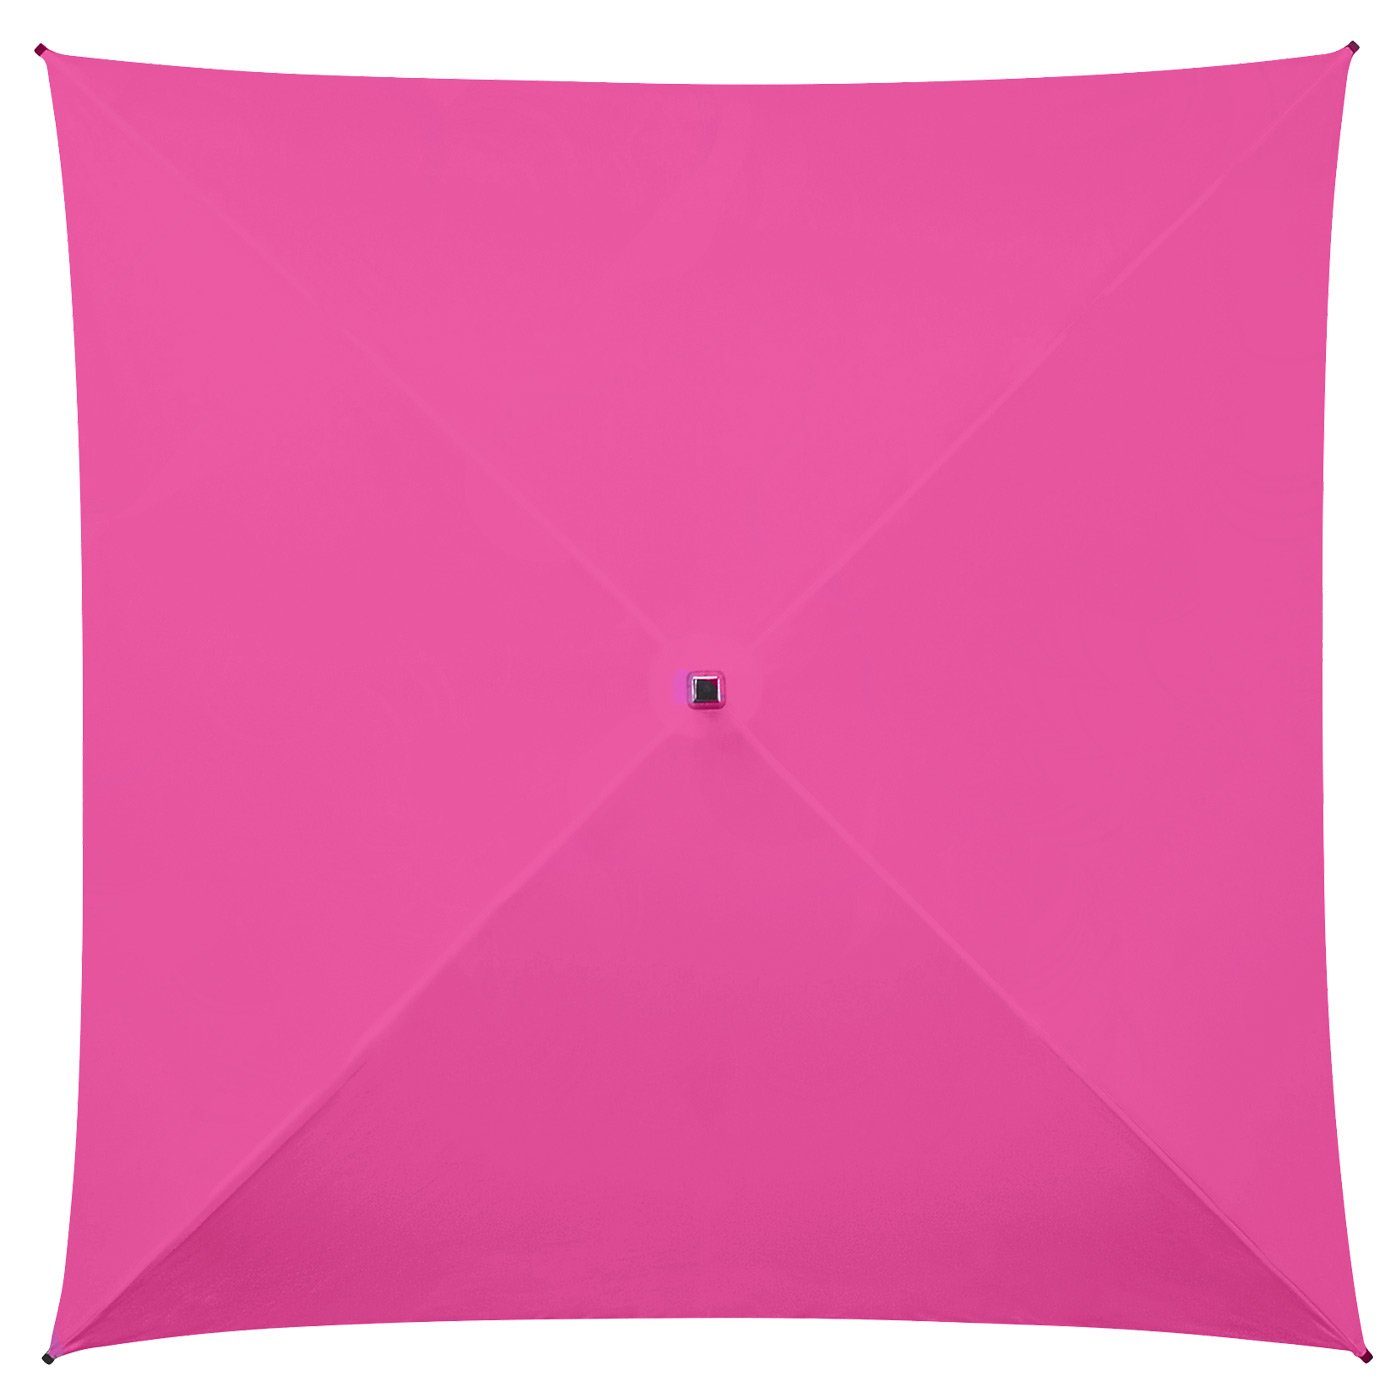 der quadratischer All besondere Regenschirm, voll Langregenschirm ganz Impliva Square® Regenschirm pink